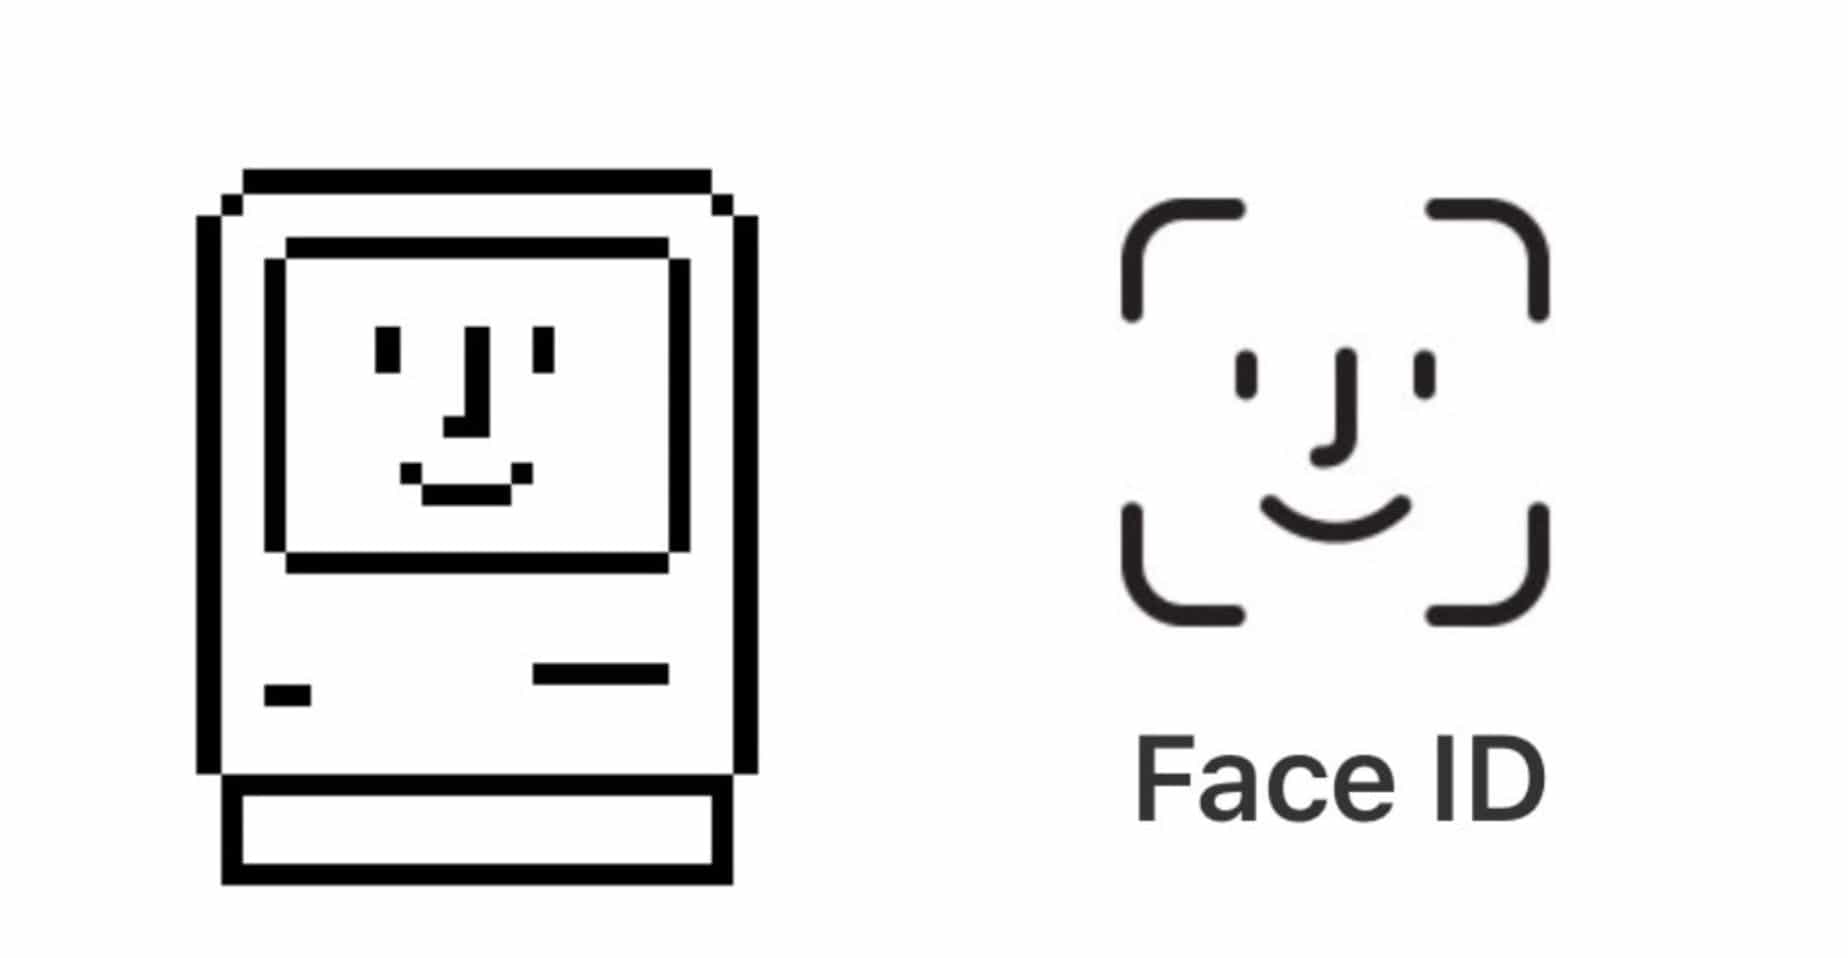 Macintosh Logo - Face ID logo resurrects a classic Macintosh icon | Cult of Mac